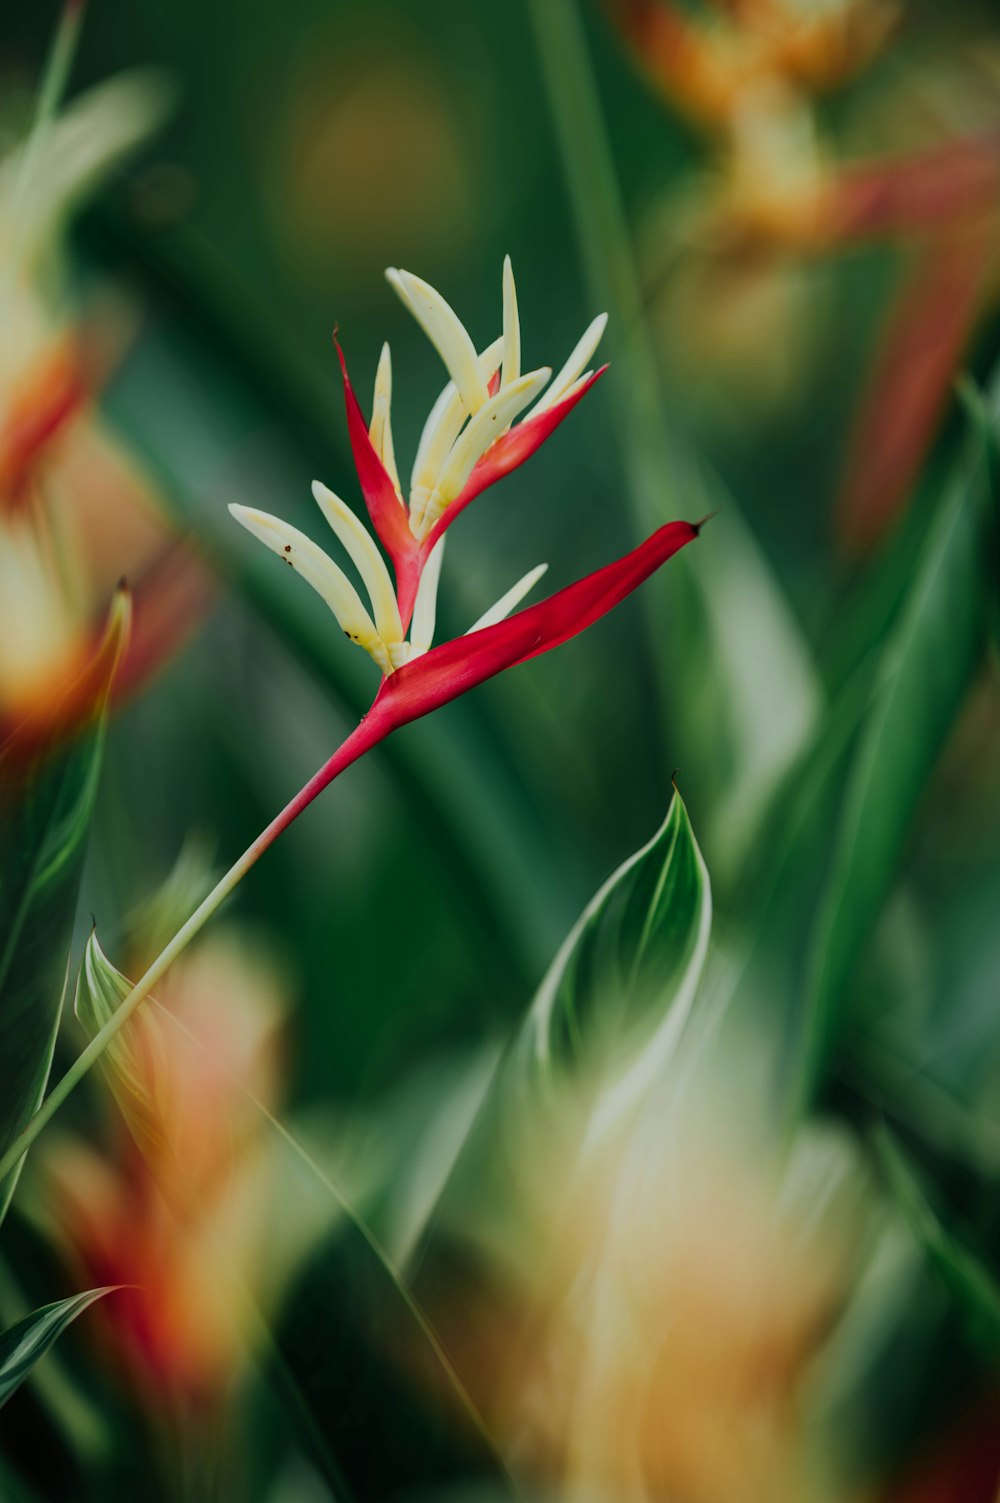 red and white flower in tilt shift lens